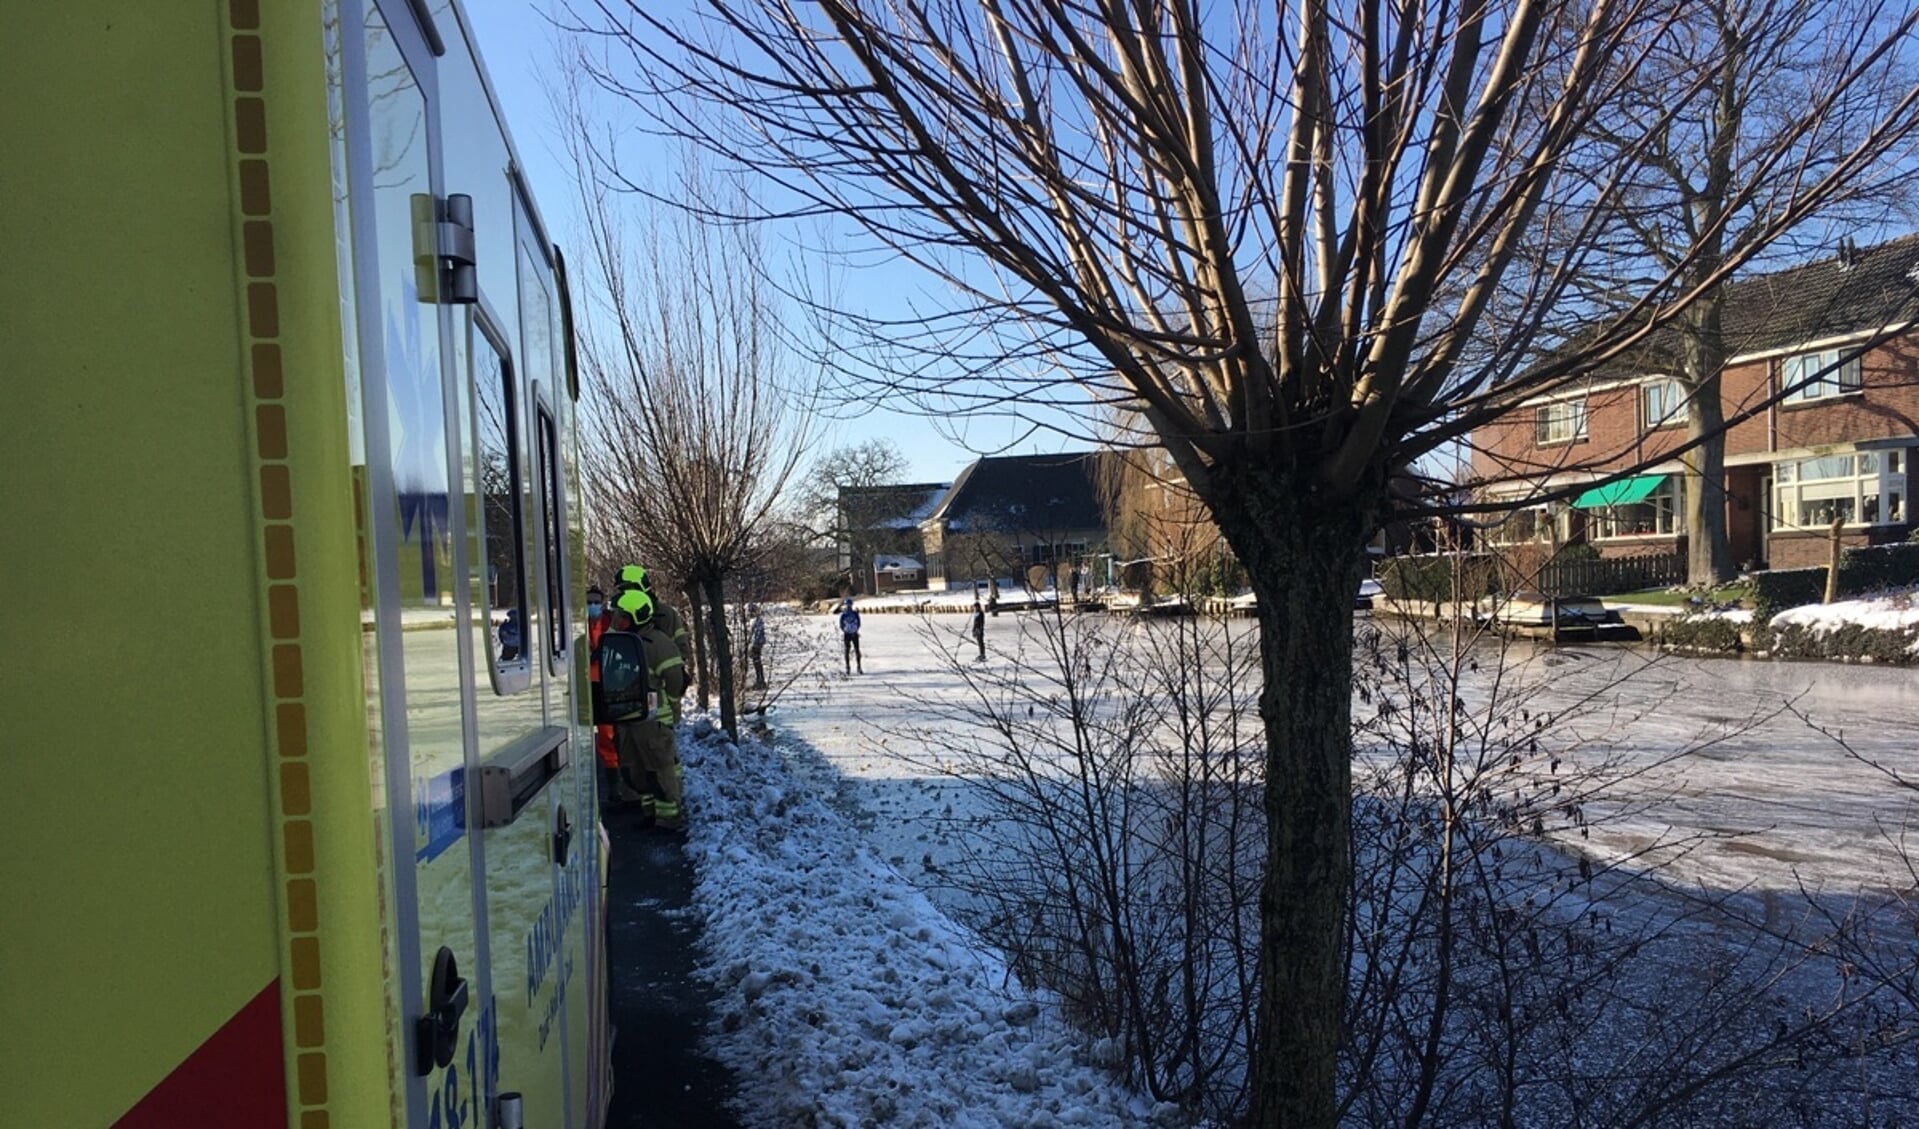 • De ambulance staat langs de Dorpsstraat, schaatsers kijken verschrikt toe.